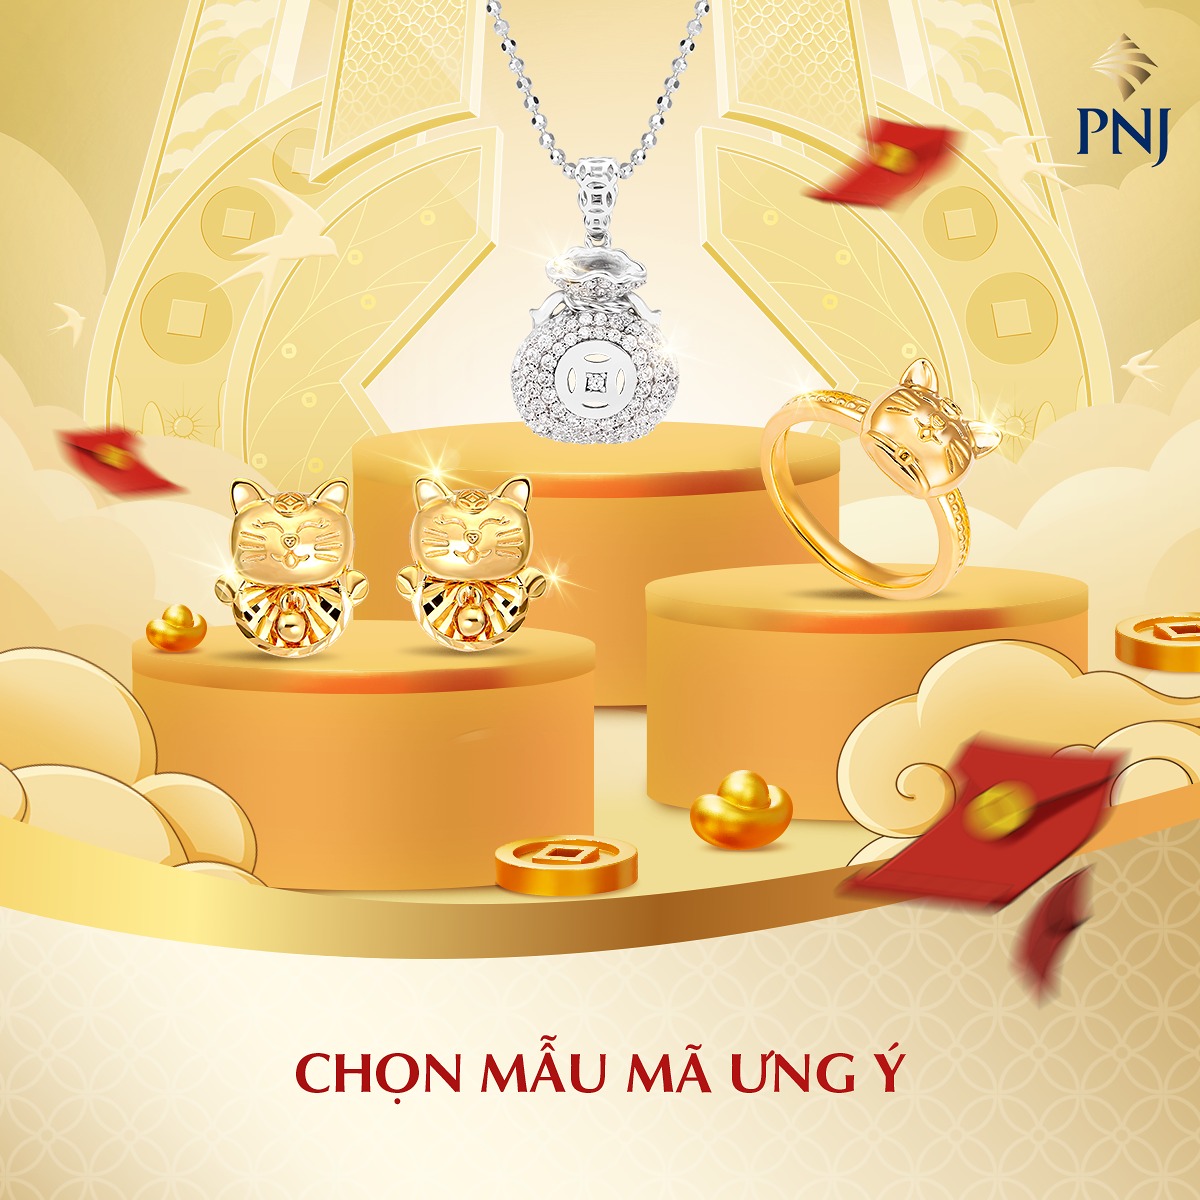  Vàng PNJ là thương hiệu thuộc Công ty cổ phần vàng bạc đá quý Phú Nhuận